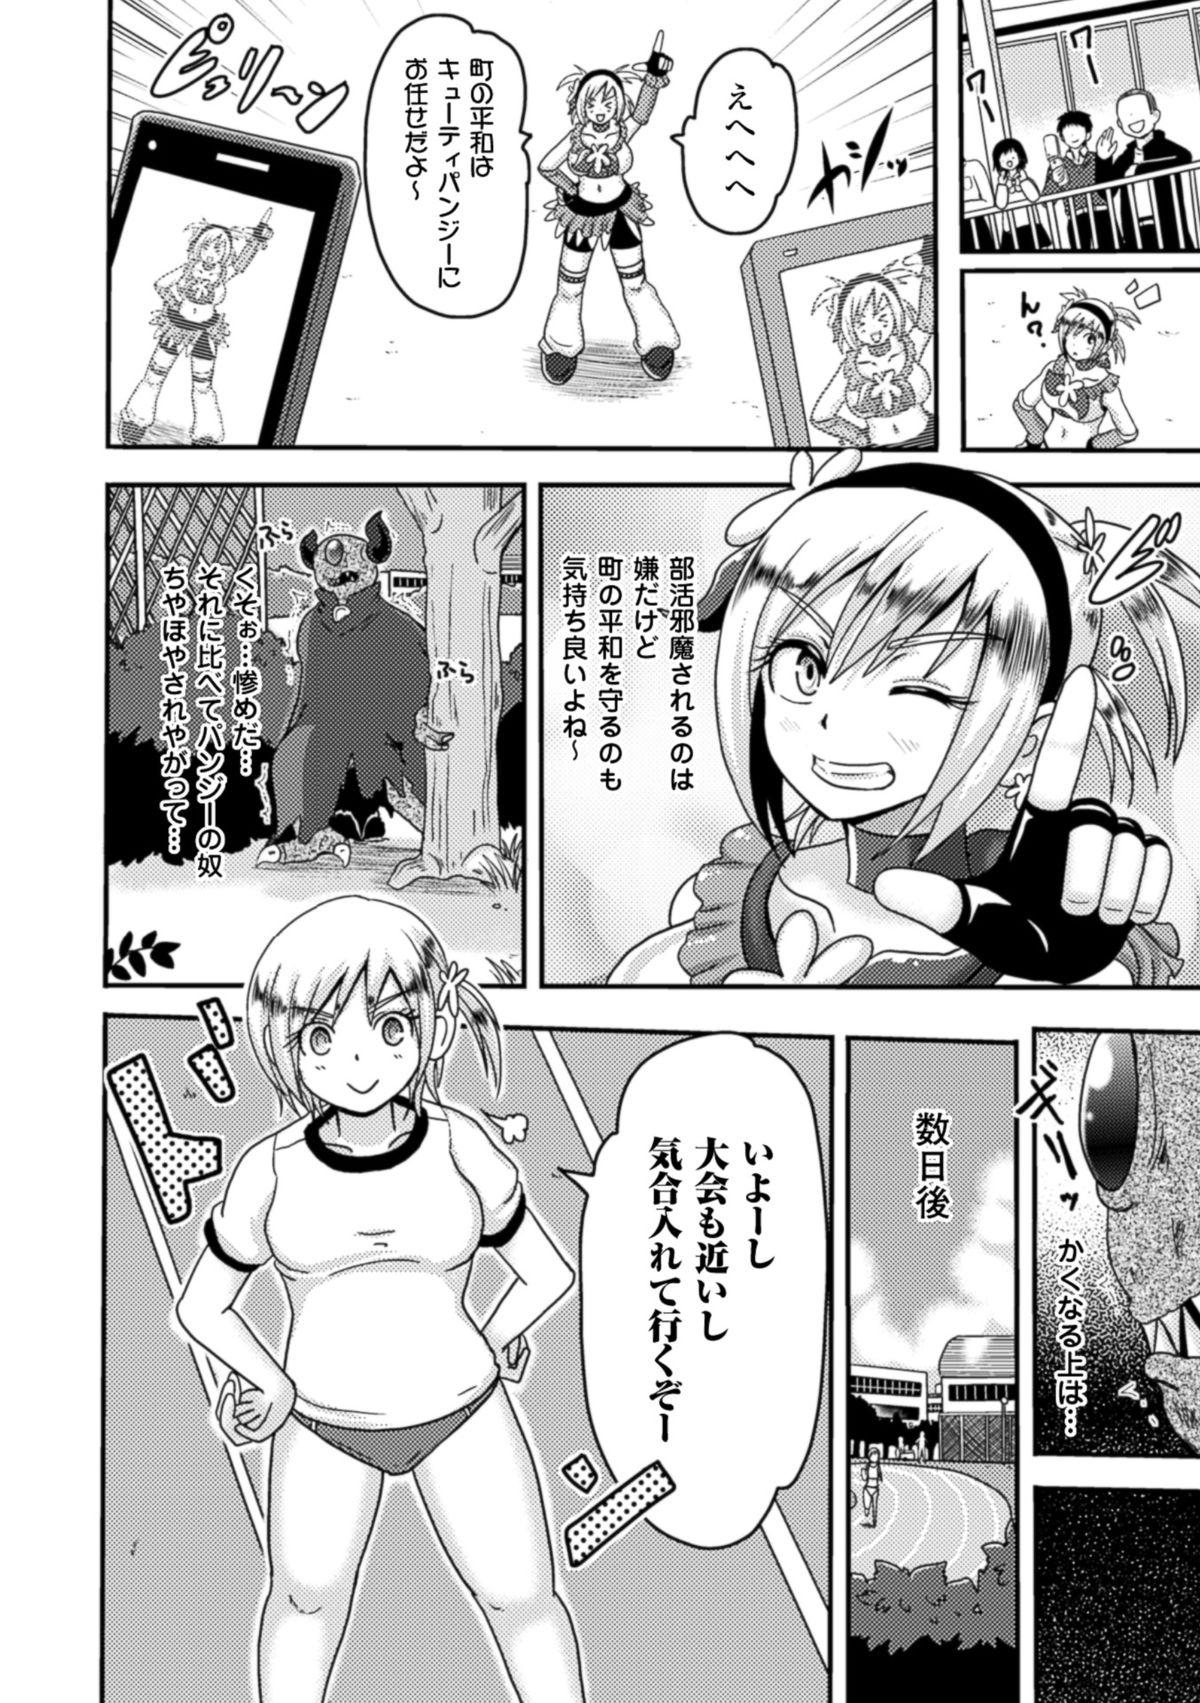 Spa Akuochisukii Sensei no Heroine Haiboku no Houteishiki - Equation of Heroine's defeat by Mr. Akuochisukii Toying - Page 6